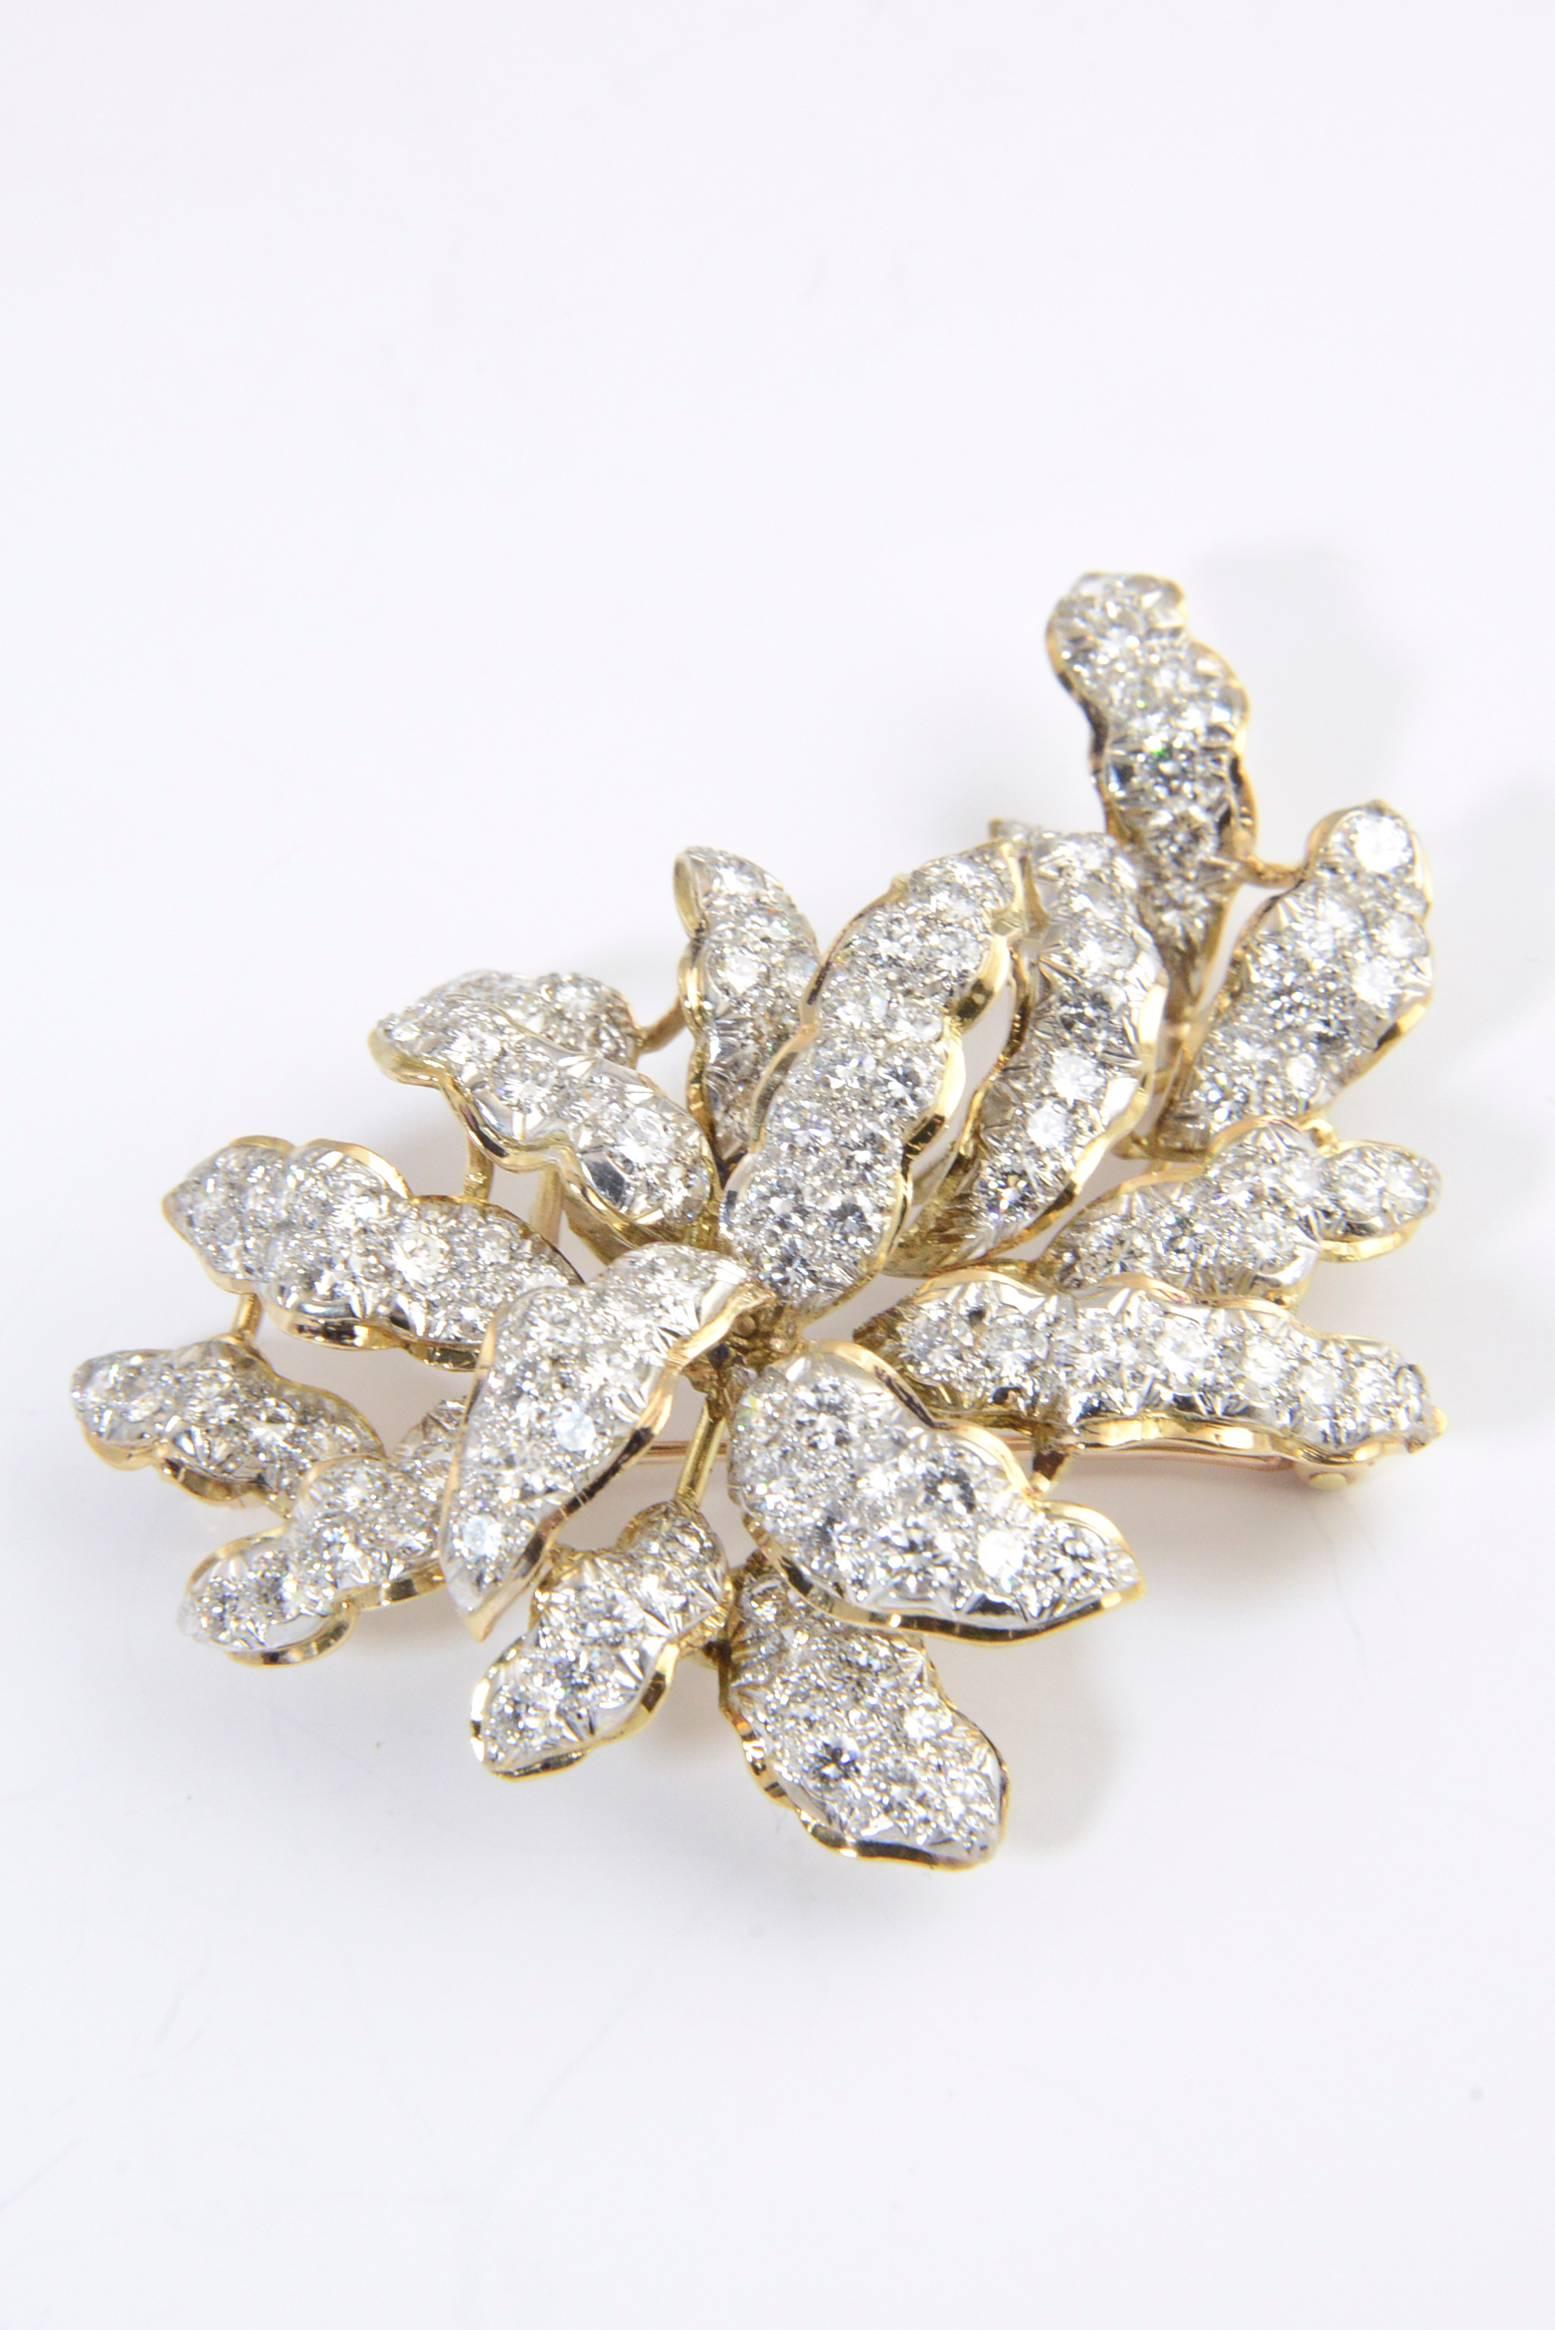 Impressionnante broche feuille en pavé de diamants en or jaune et blanc 18 carats, datant des années 1960-1970. Cette broche tridimensionnelle contient un peu moins de 8 carats de diamants.